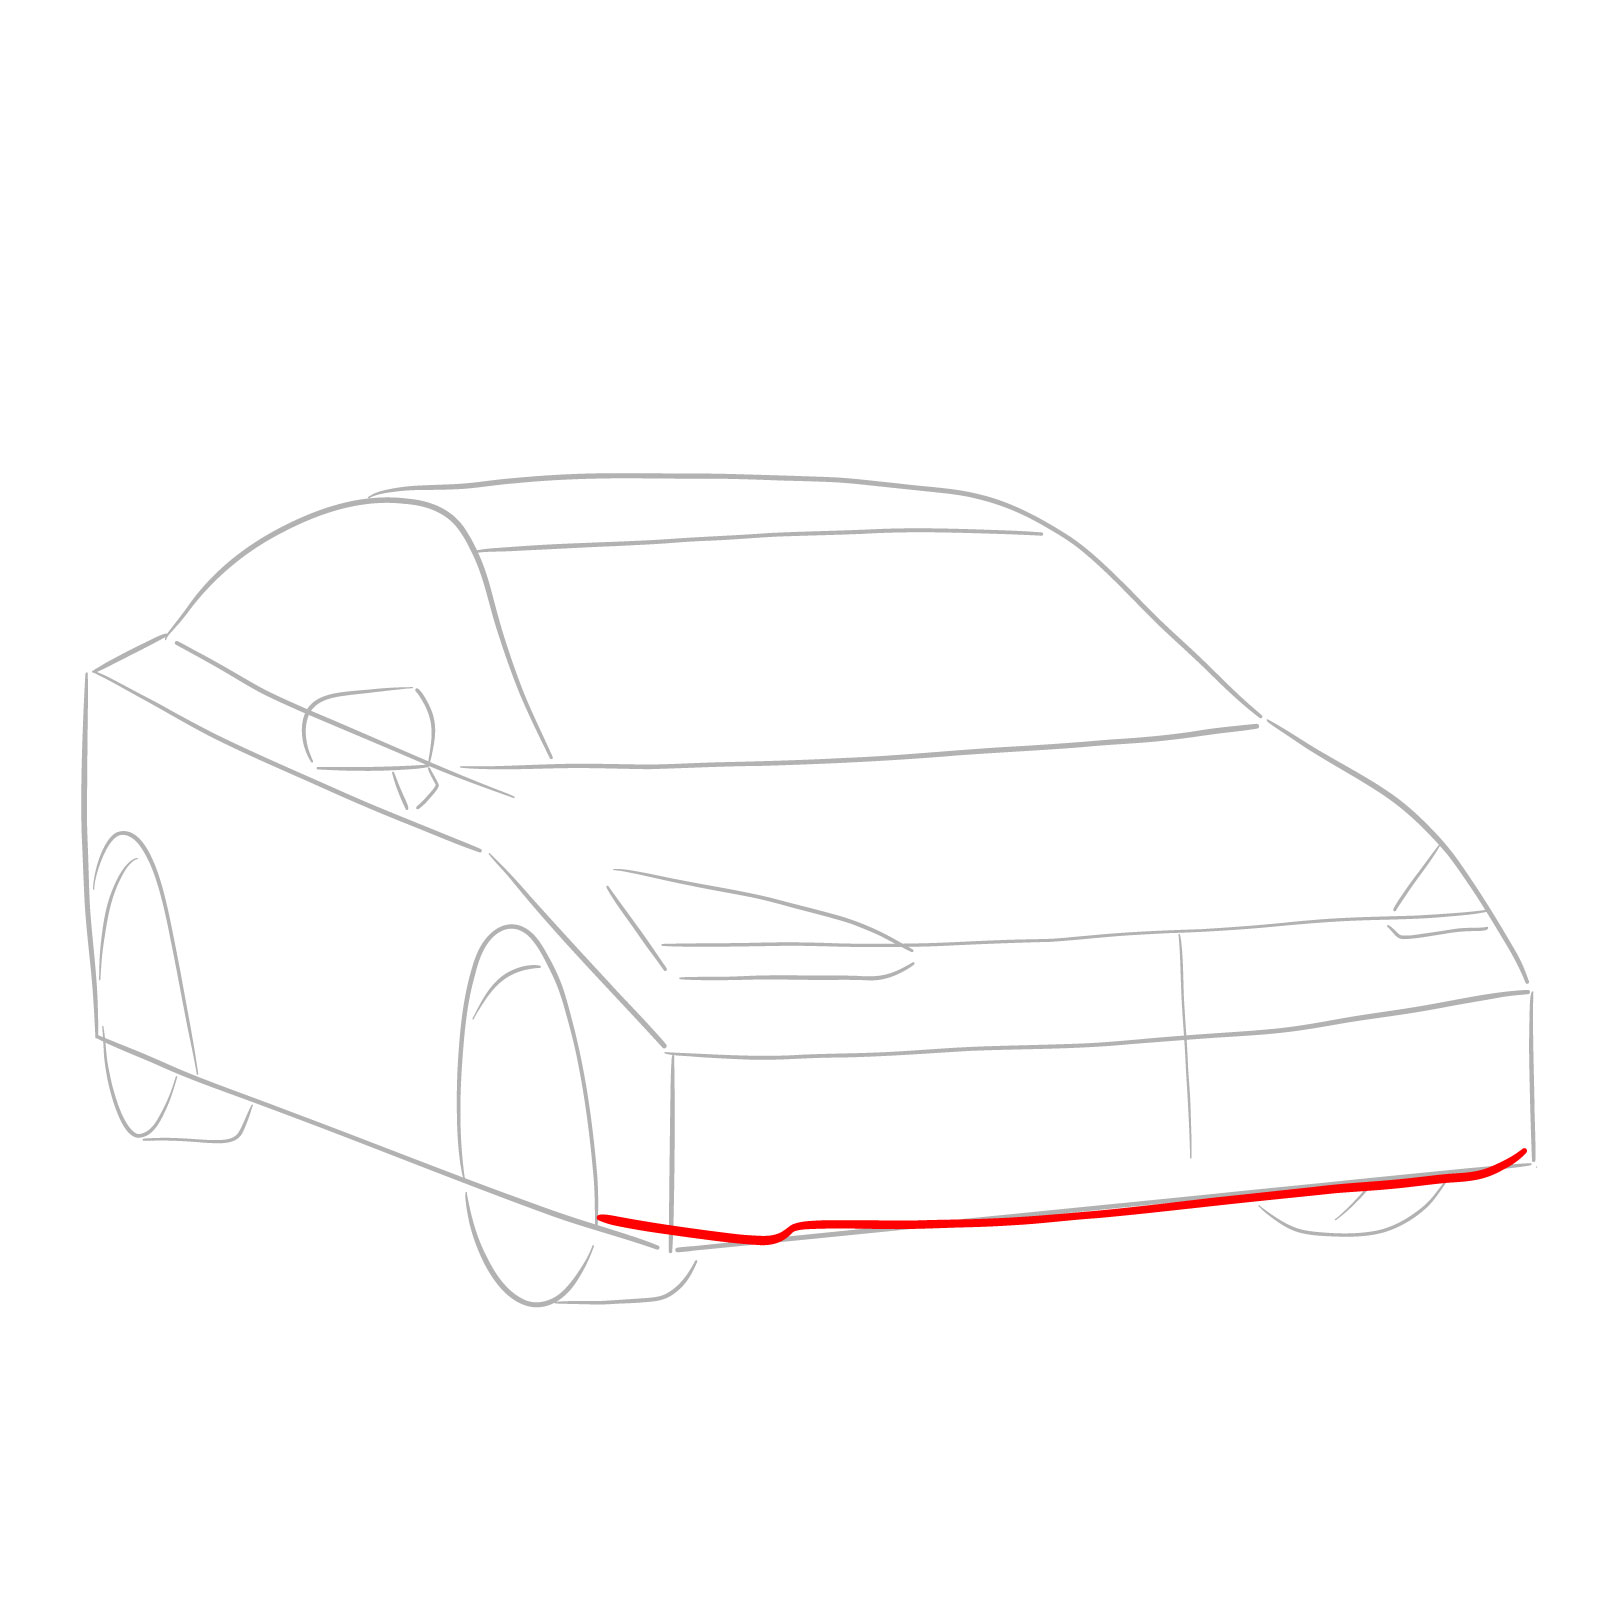 How to draw 2022 Subaru Impreza - step 04